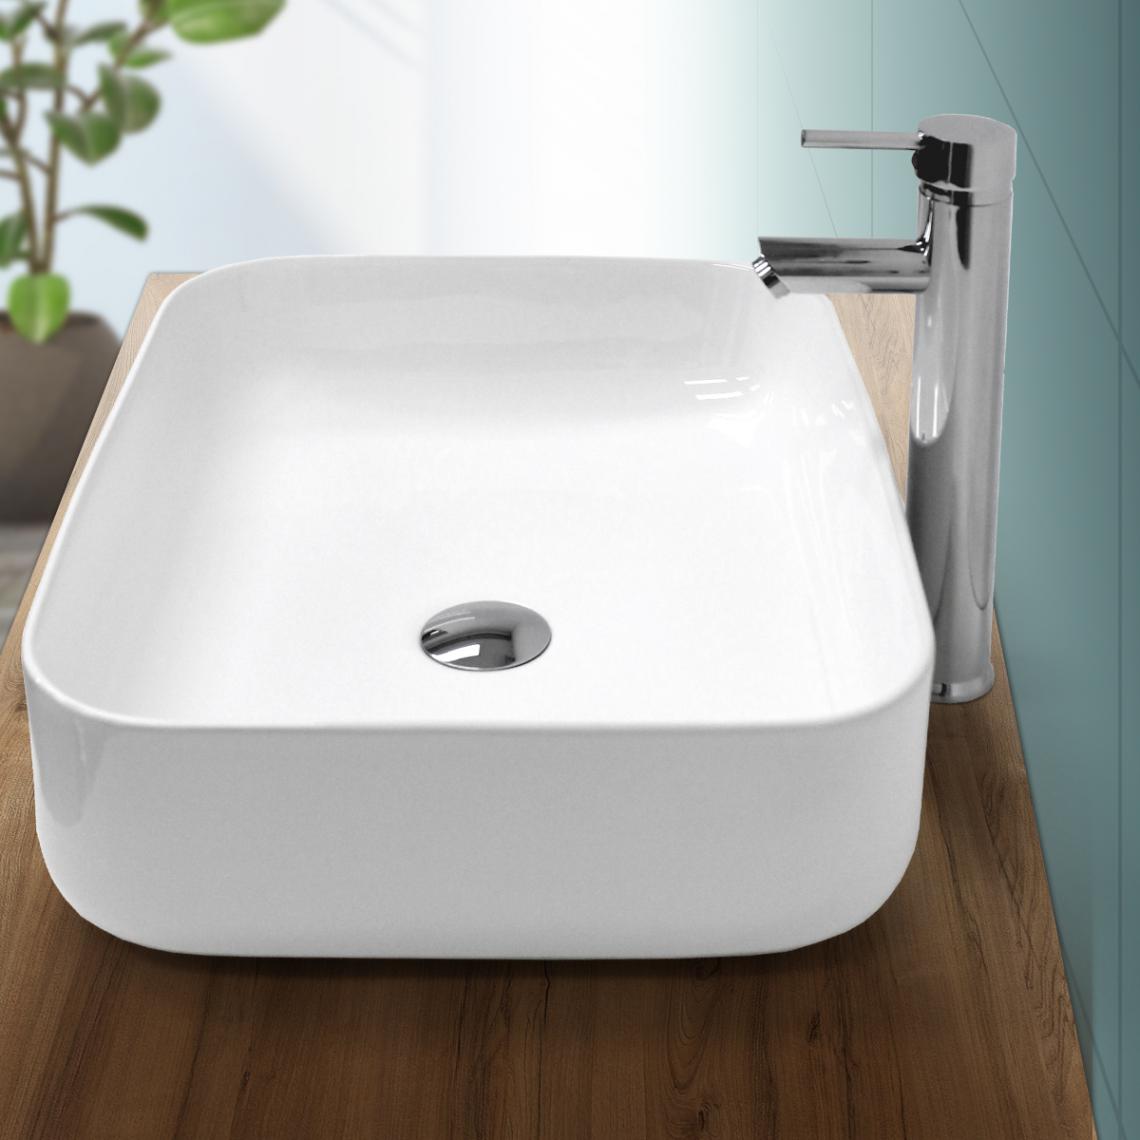 Ecd Germany - Lavabo vasque à poser céramique lave-main salle de bain blanc 505 x 395 x 135 mm - Lavabo